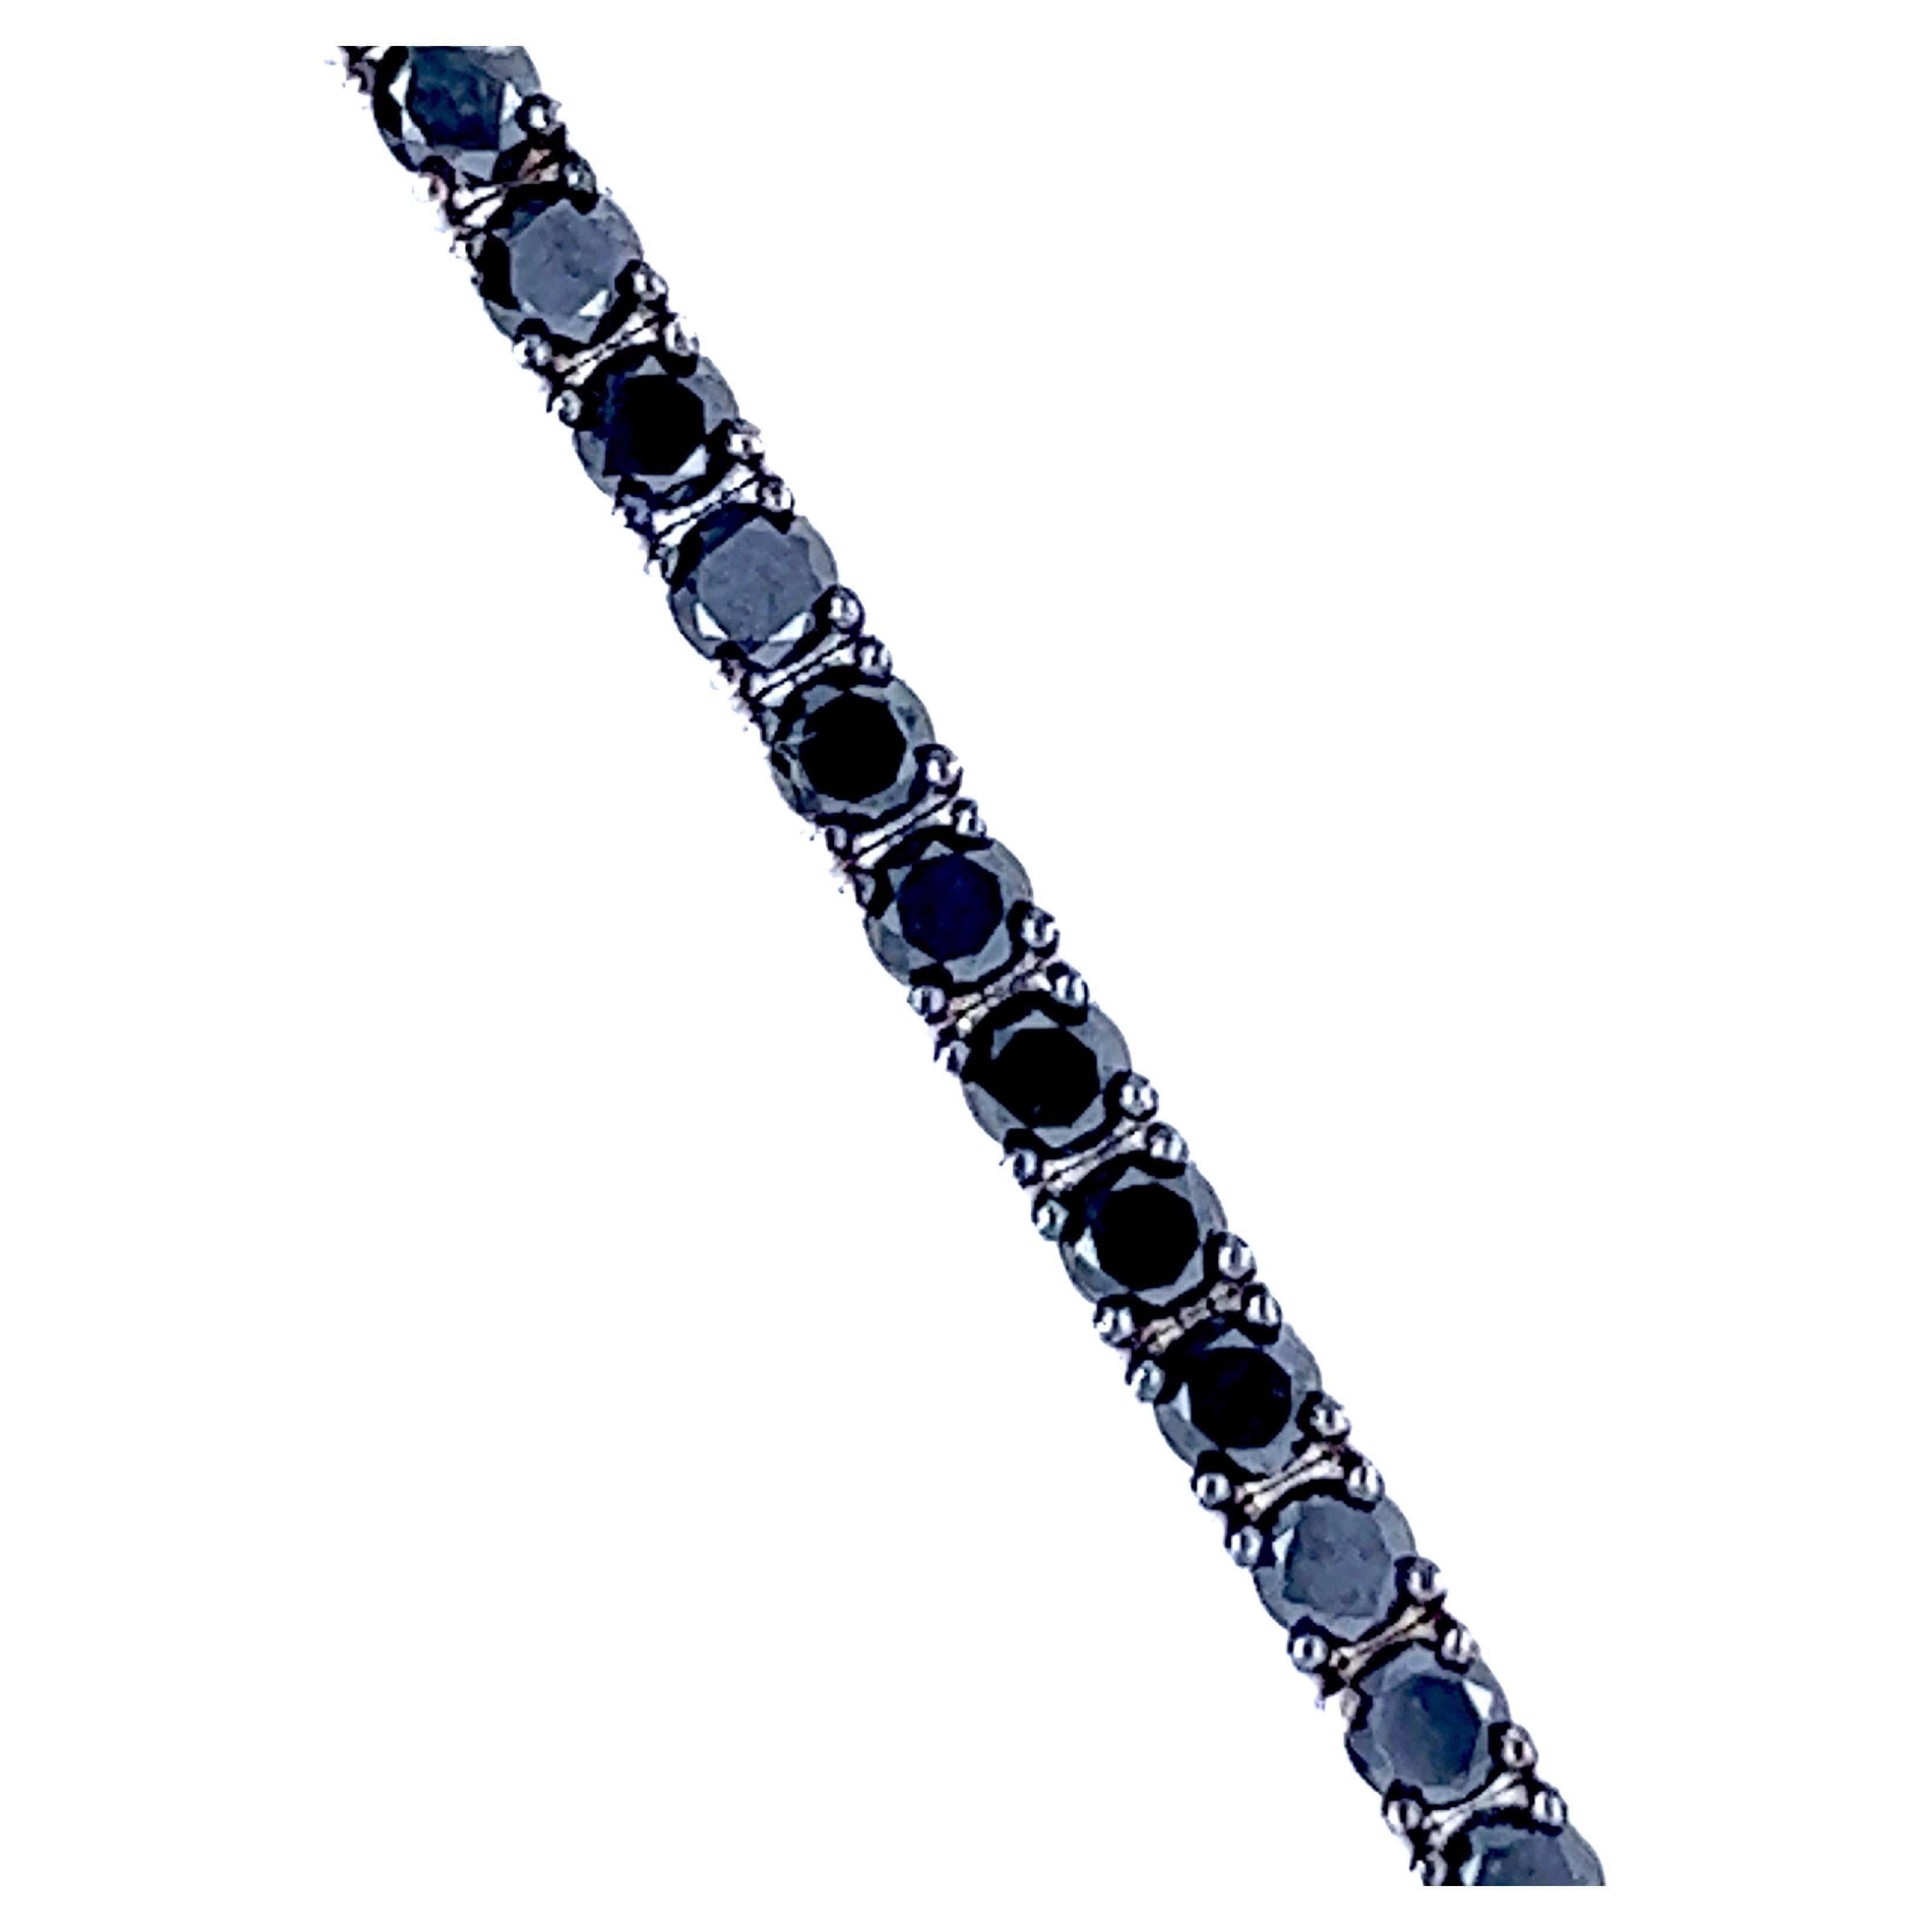 Bracelet de tennis artisanal à la fois chic et intemporel, orné d'un diamant noir naturel de 4,60 carats, taille brillant 58, dans une monture en or blanc et noirci de 18 carats (0,41 oz).
Un certificat gemmologique détaillé est inclus.
La longueur